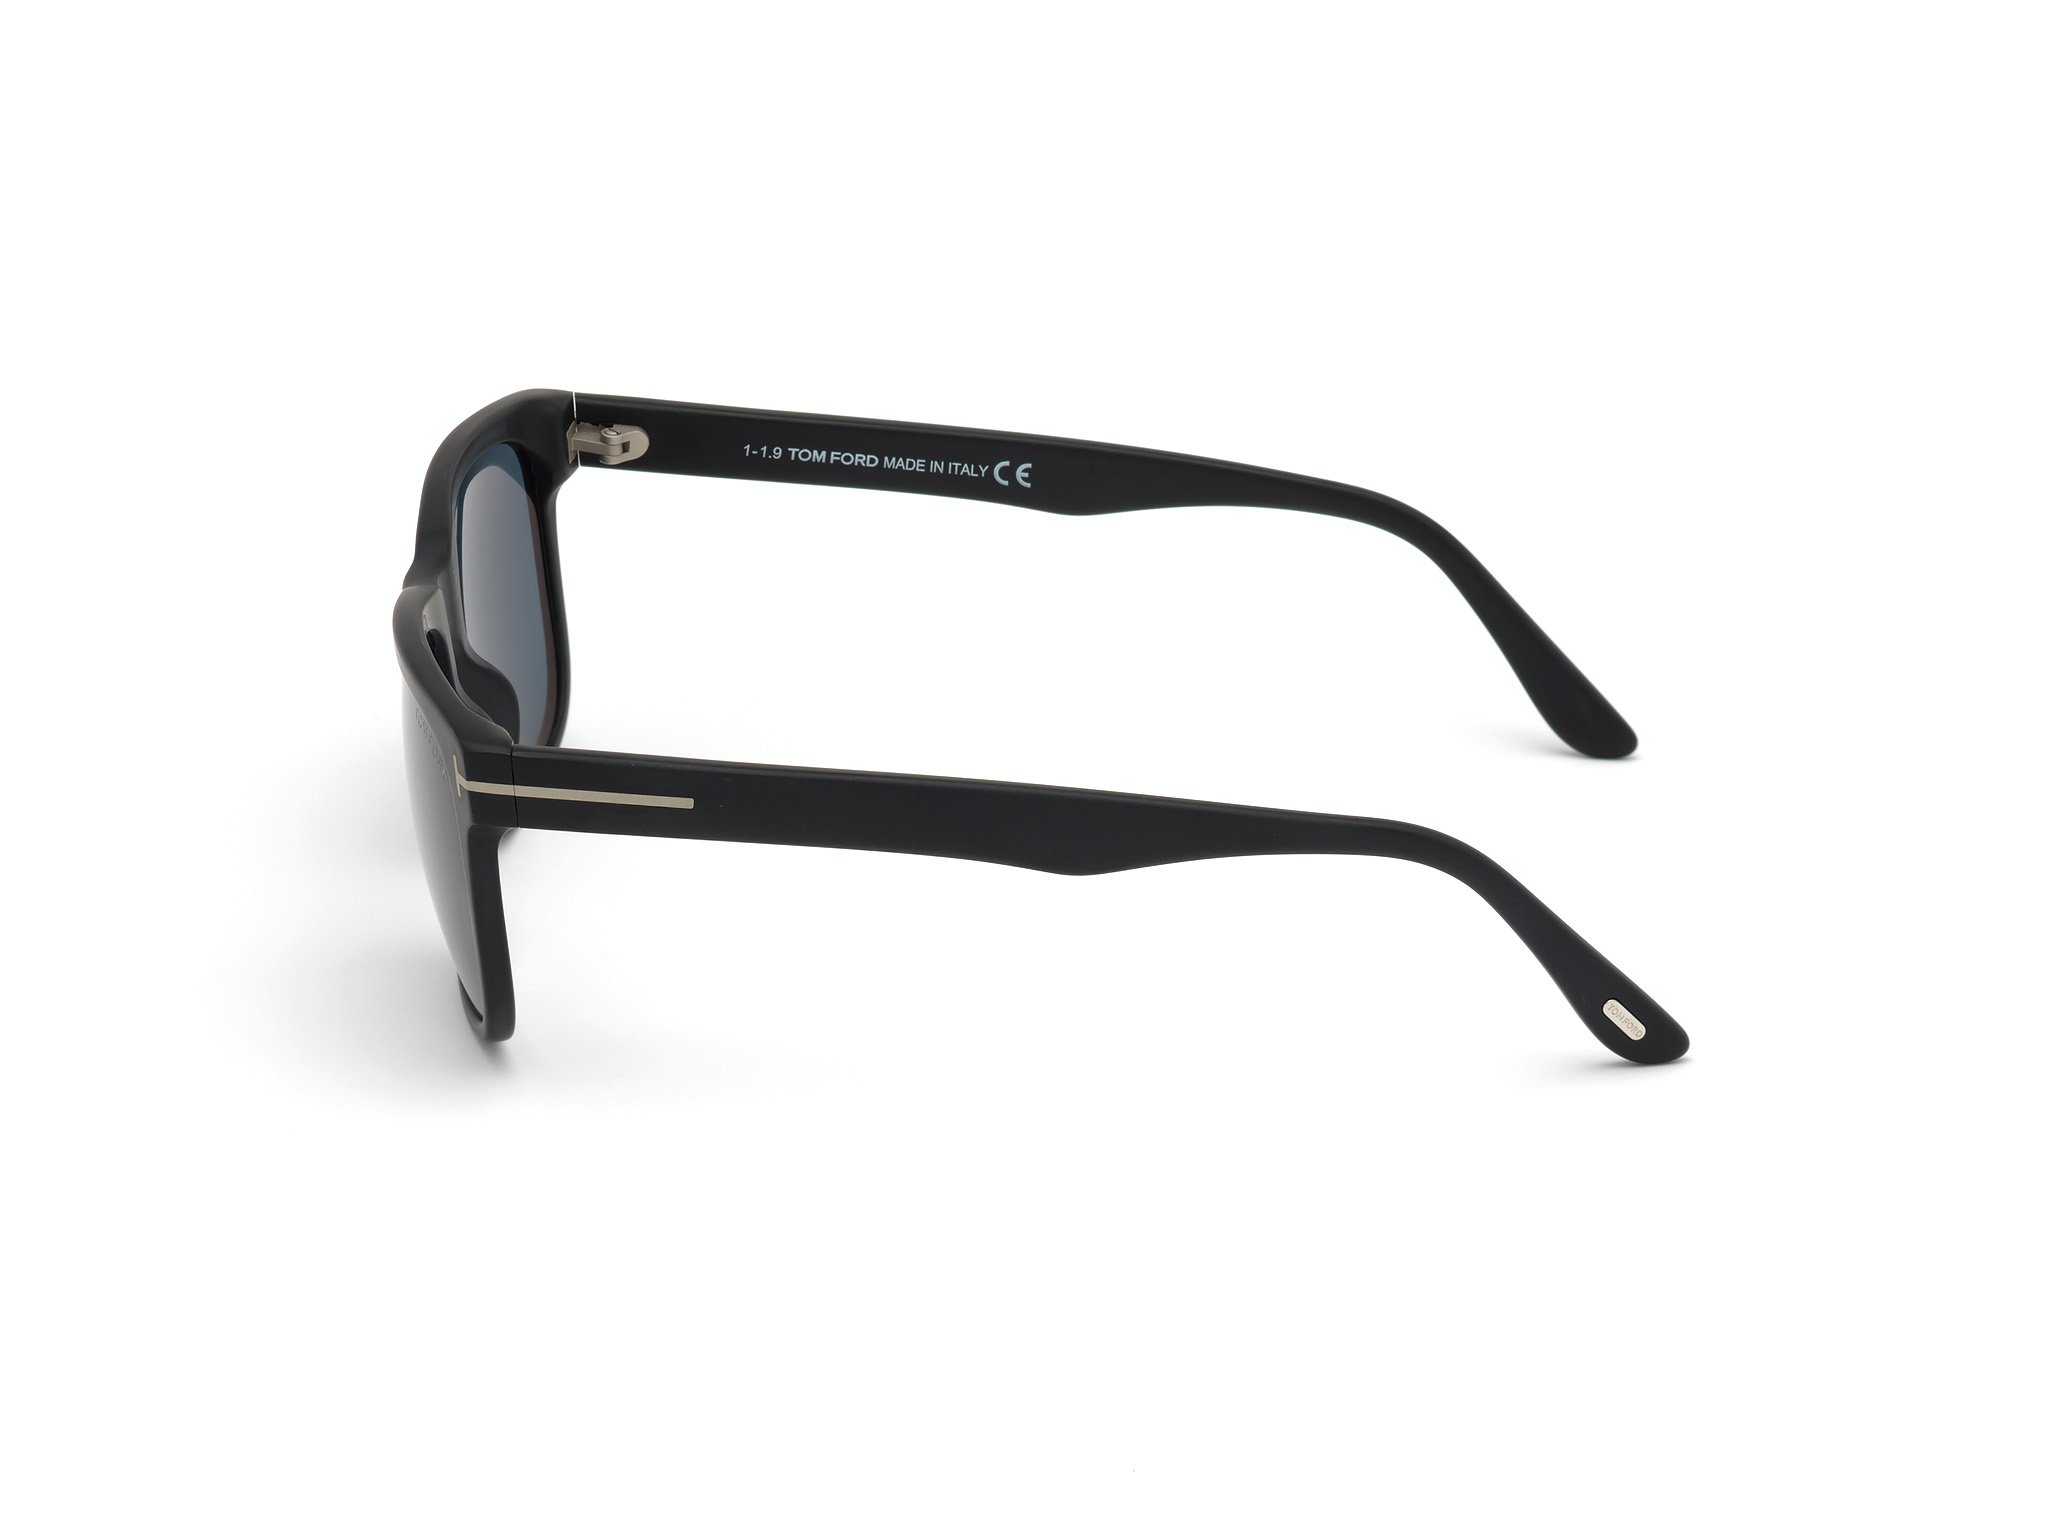 Das Bild zeigt die Sonnenbrille STEPHENSON FT0775 von der Marke Tom Ford in schwarz seitlich